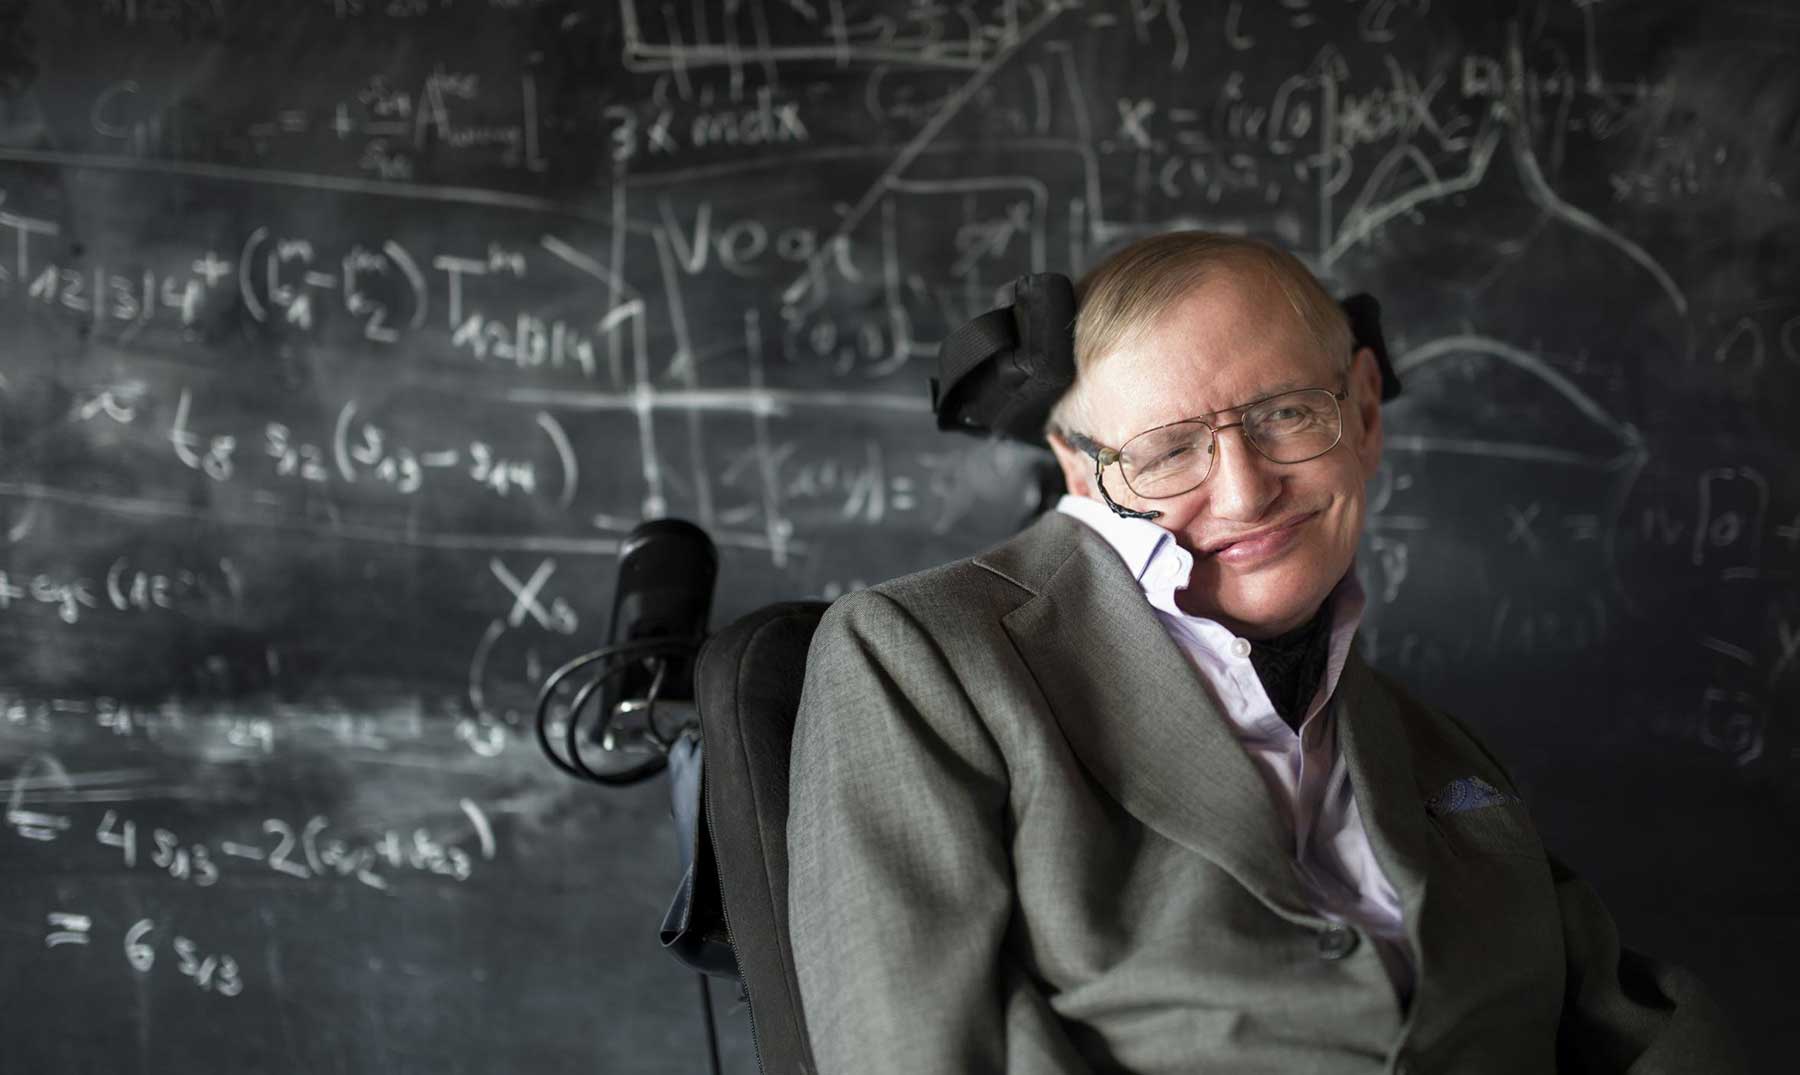 Frases de Stephen Hawking, el fisico que se crecio frente la adversidad